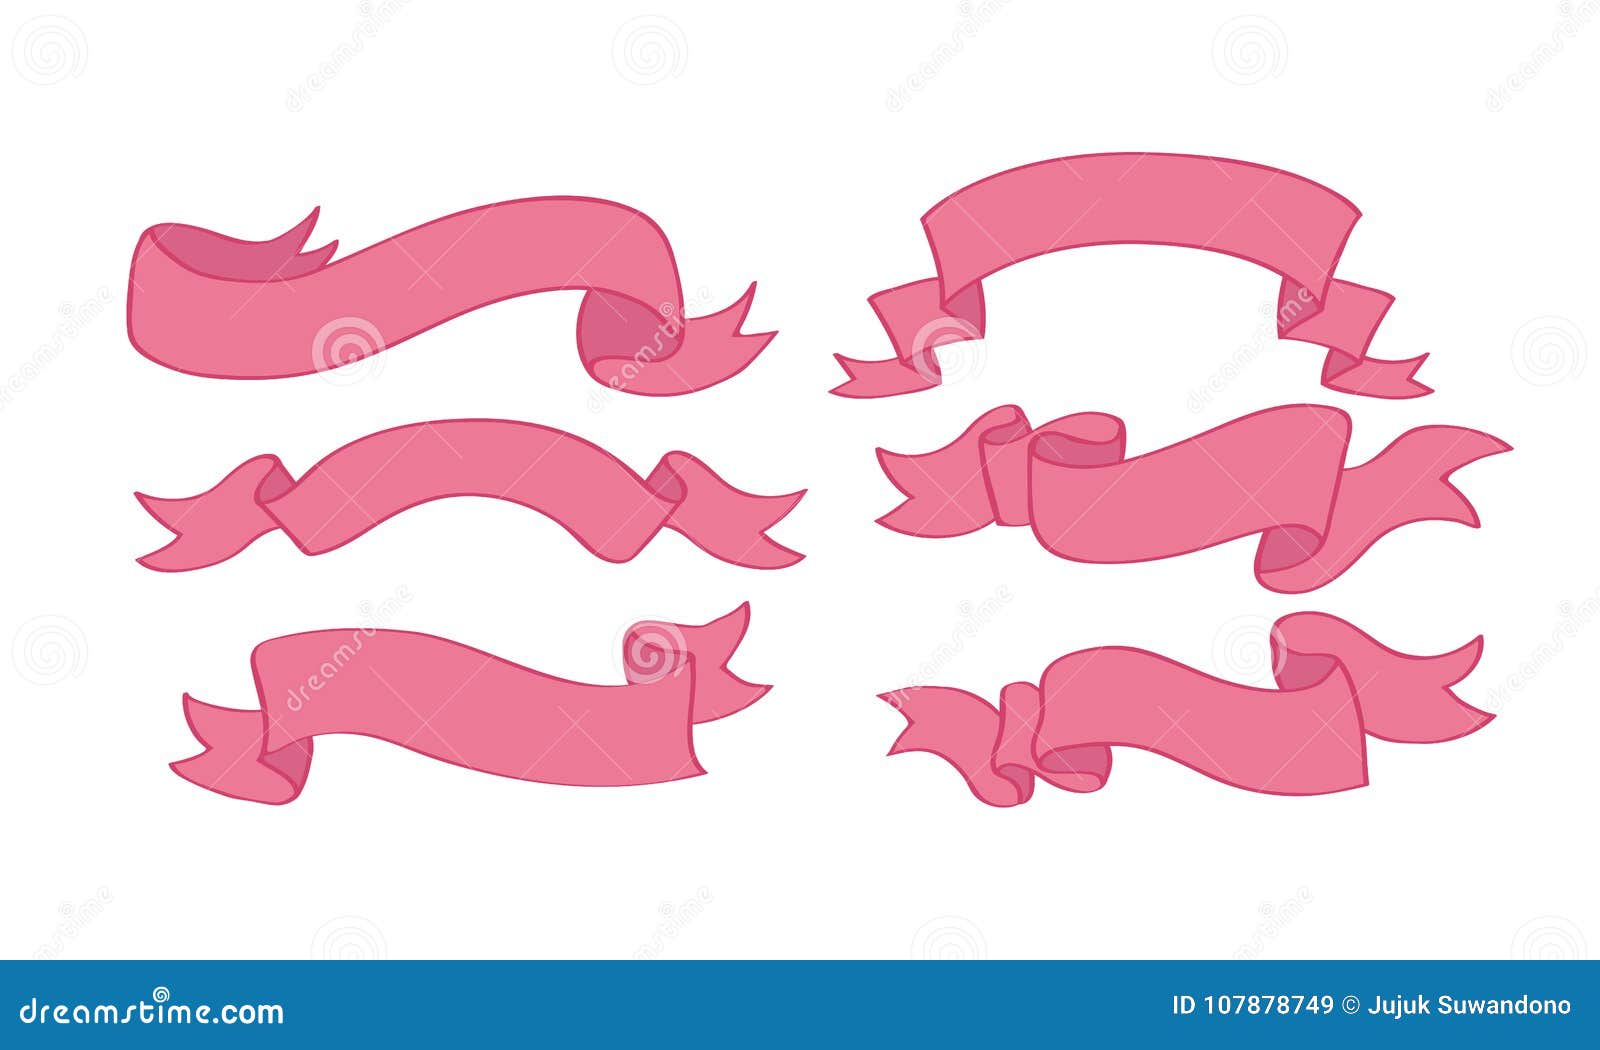 Cute ribbon cartoon stock vector. Illustration of cute - 144475858